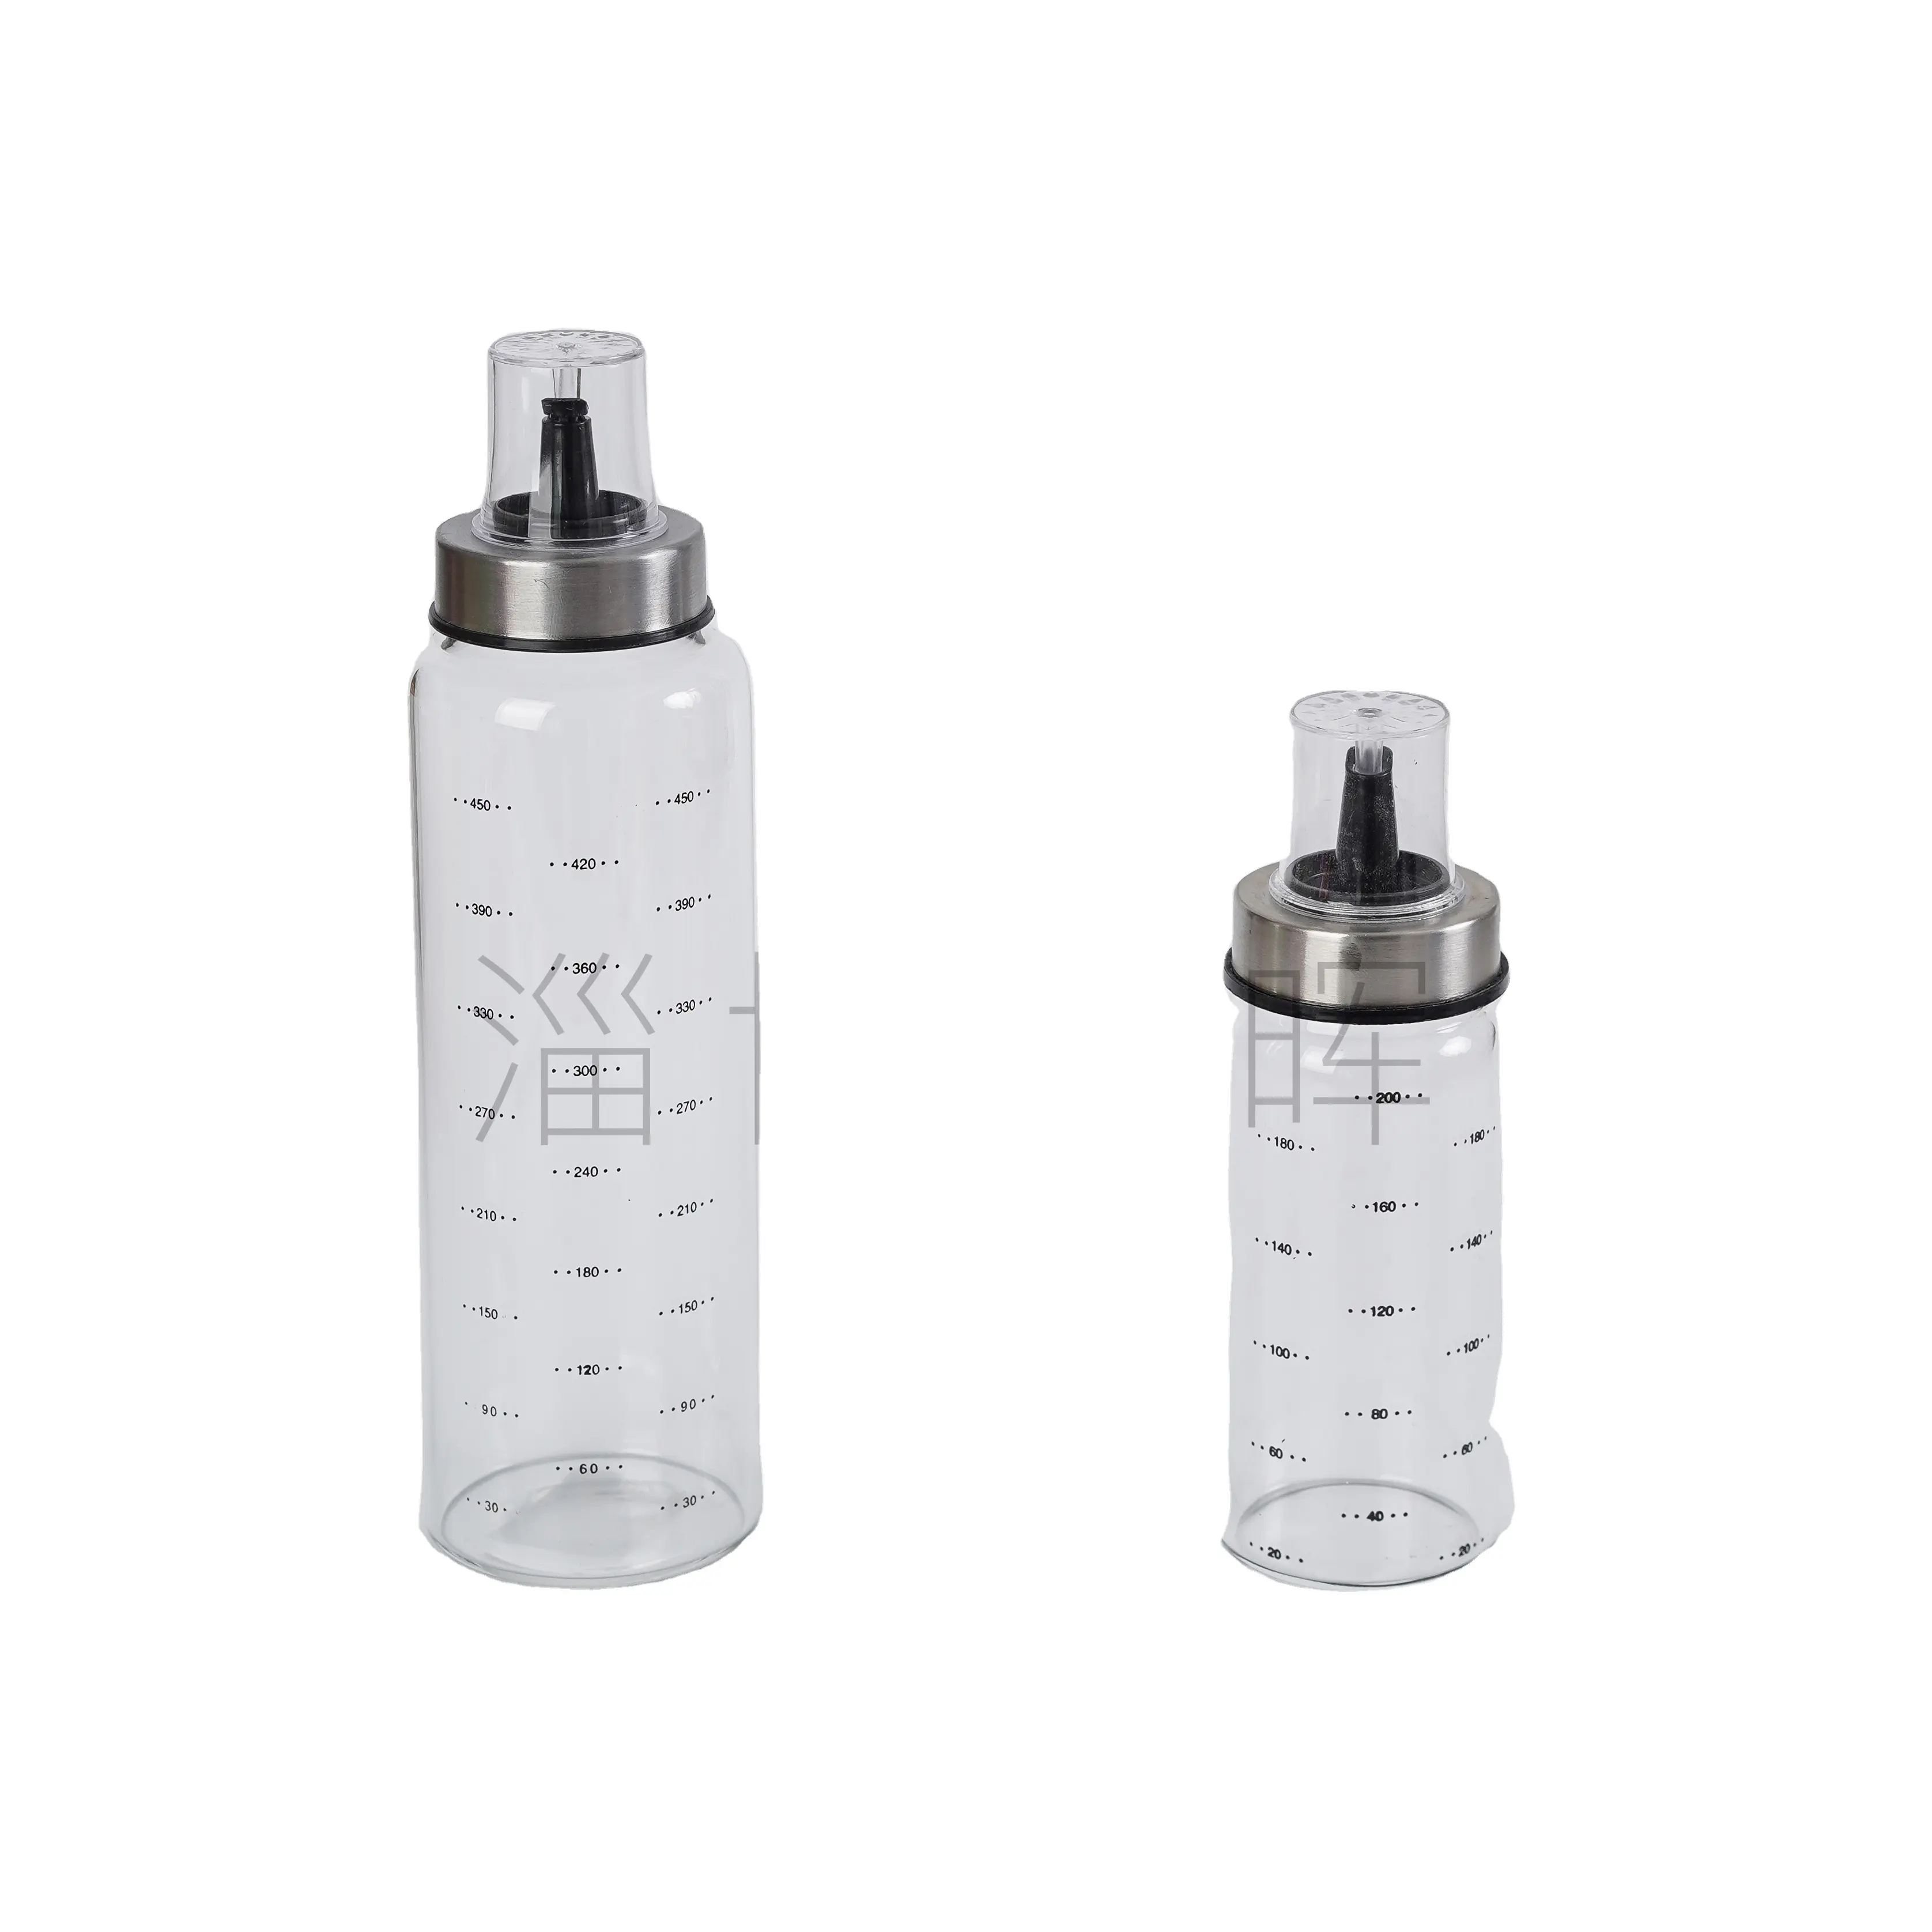 Leak Proof Design Glass Oil & Vinegar Jars High Borosilicate Glass Seasoning Spice Bottle for Home & Kitchen Use